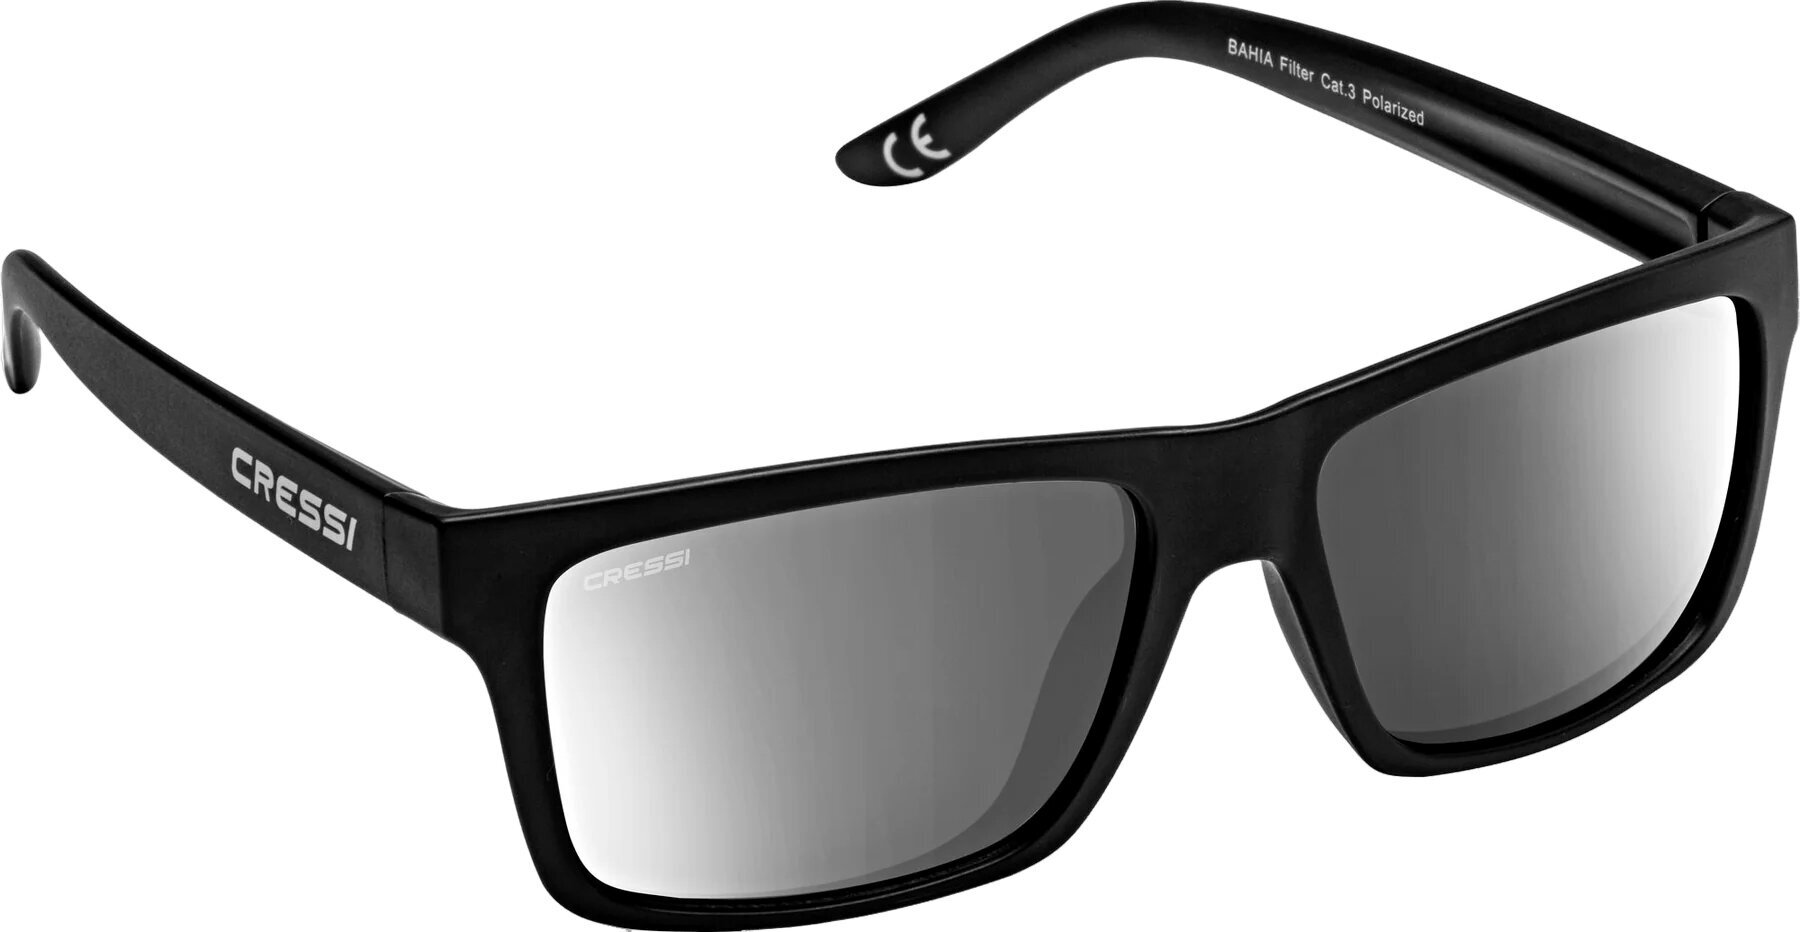 Sonnenbrille fürs Segeln Cressi Bahia Black/Silver/Mirrored Sonnenbrille fürs Segeln